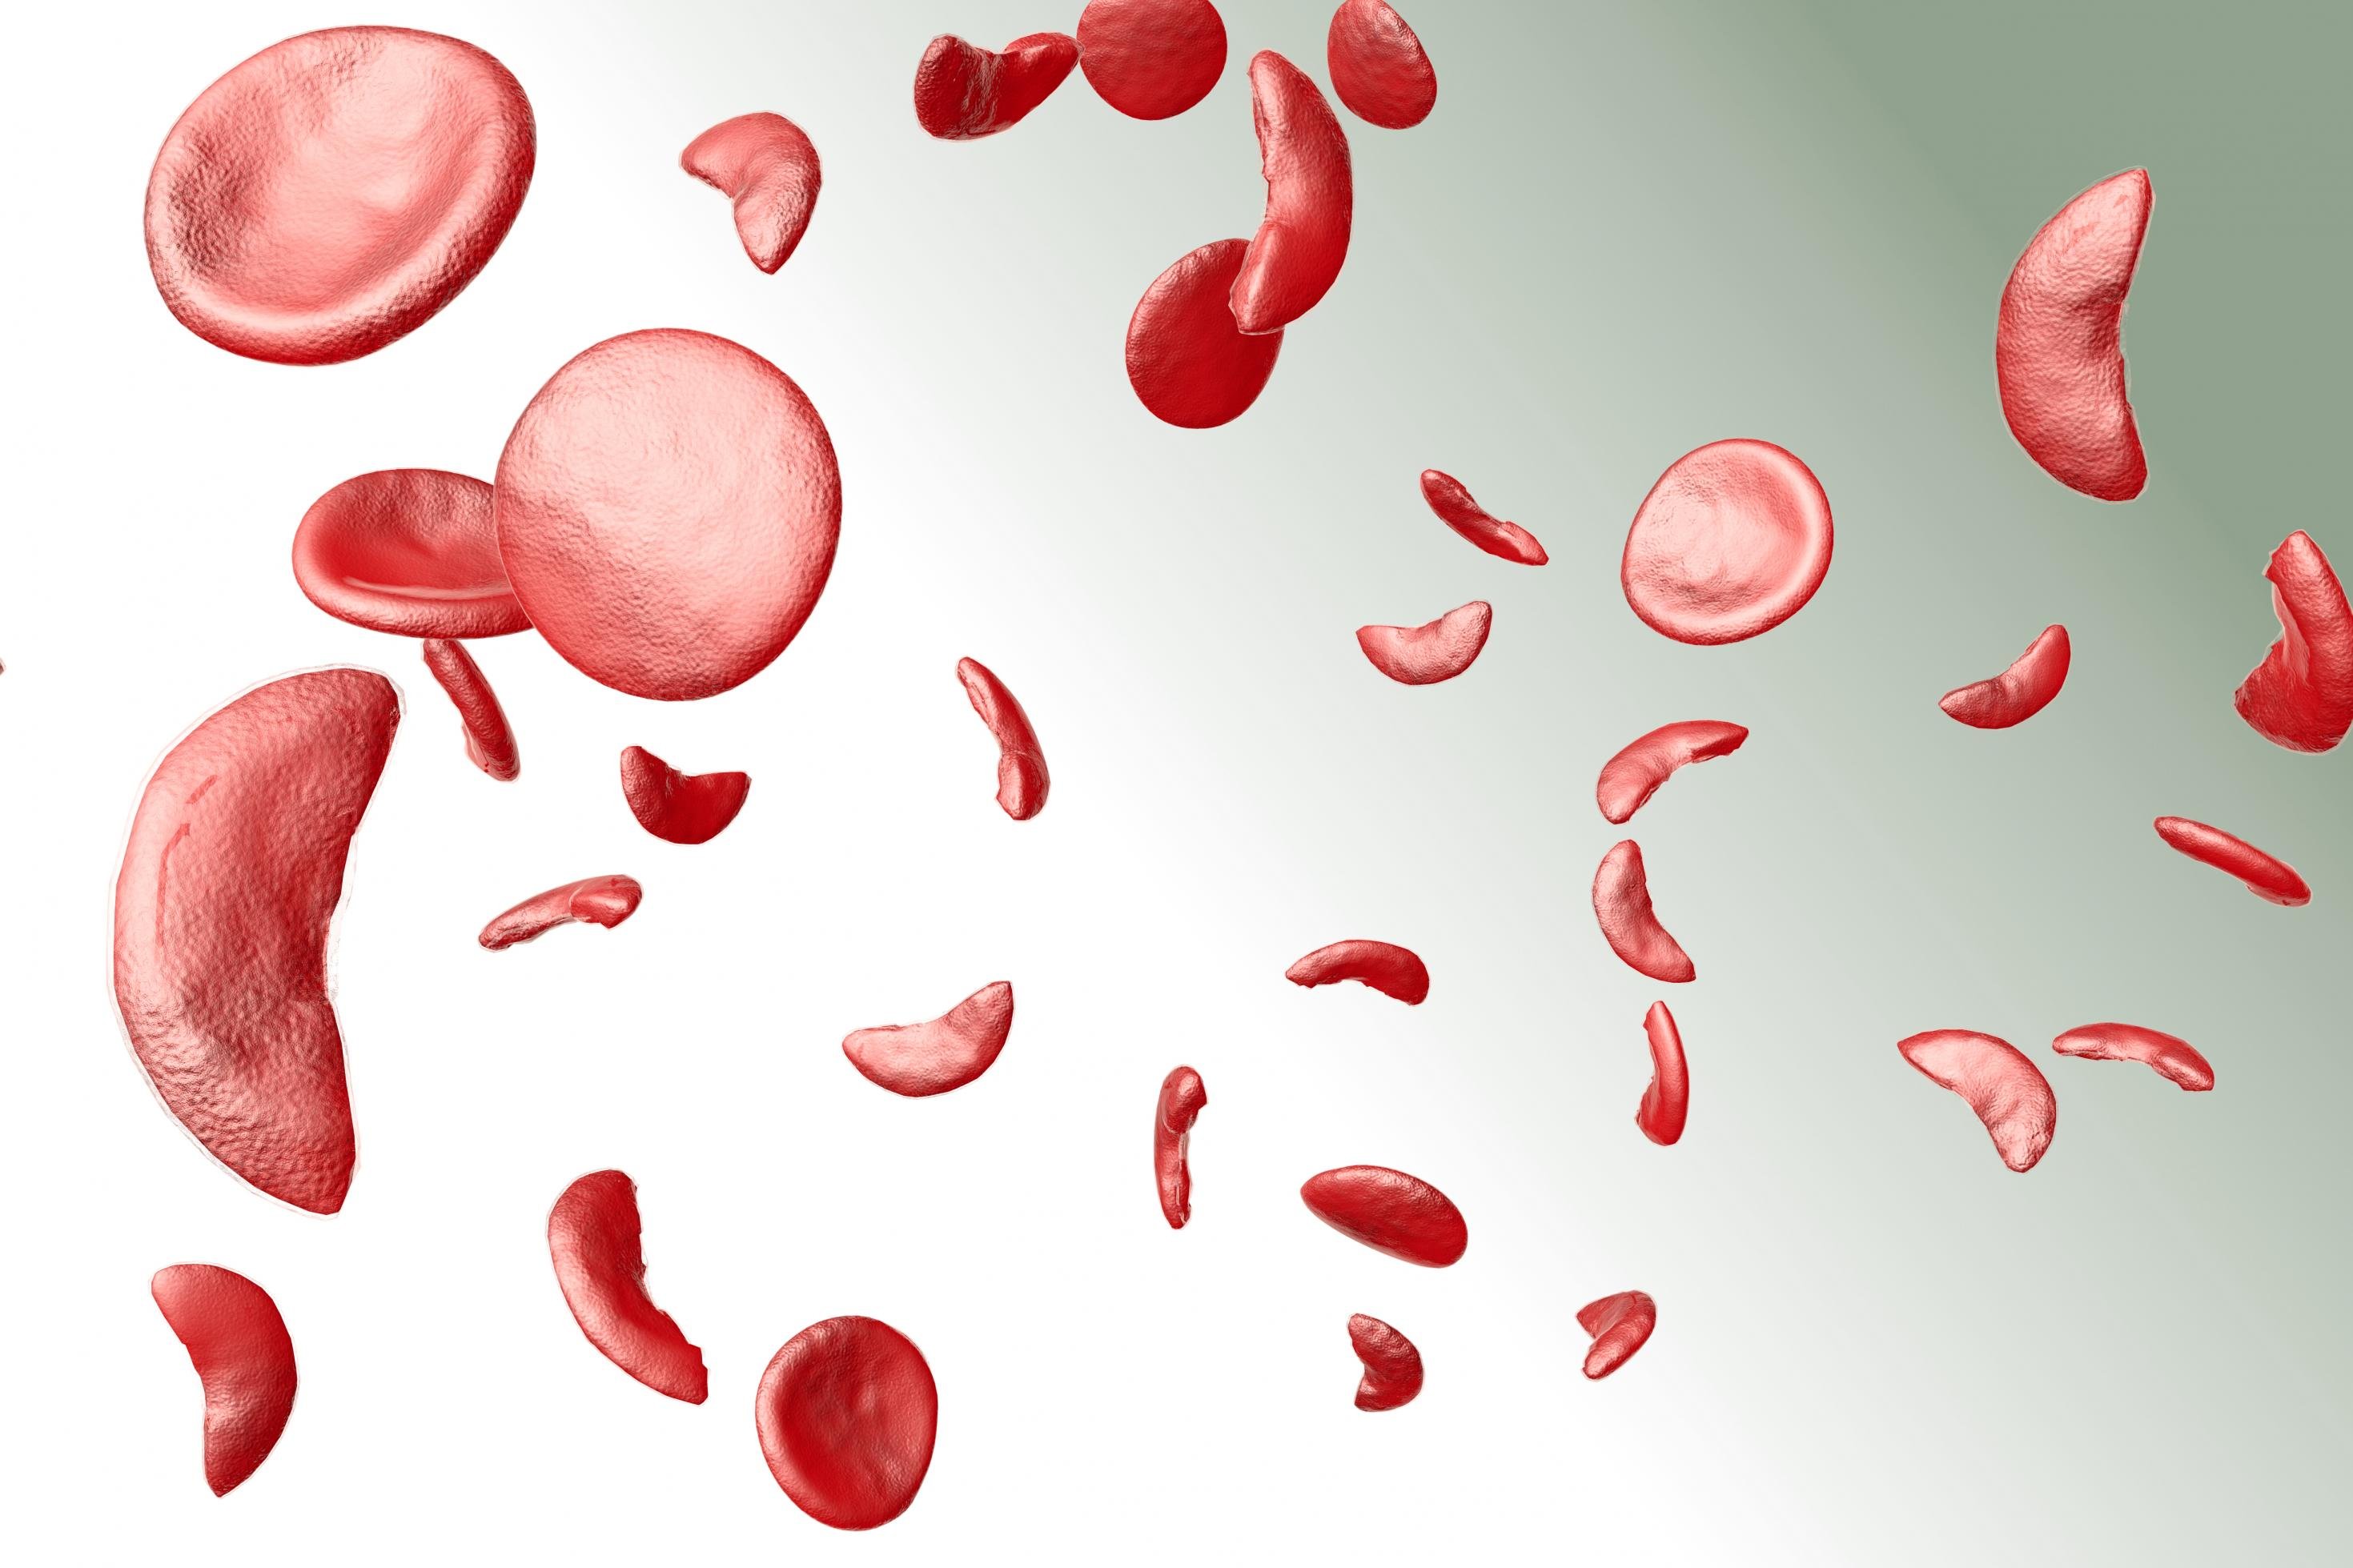 Grafische Animation der roten Blutkörperchen im menschlichen Blut. Die regulären Blutkörperchen sind eher rund, bei der Sichelzellenanämie sind sie sichelförmig. Der Unterschied ist bereits unter dem Mikroskop zu sehen.